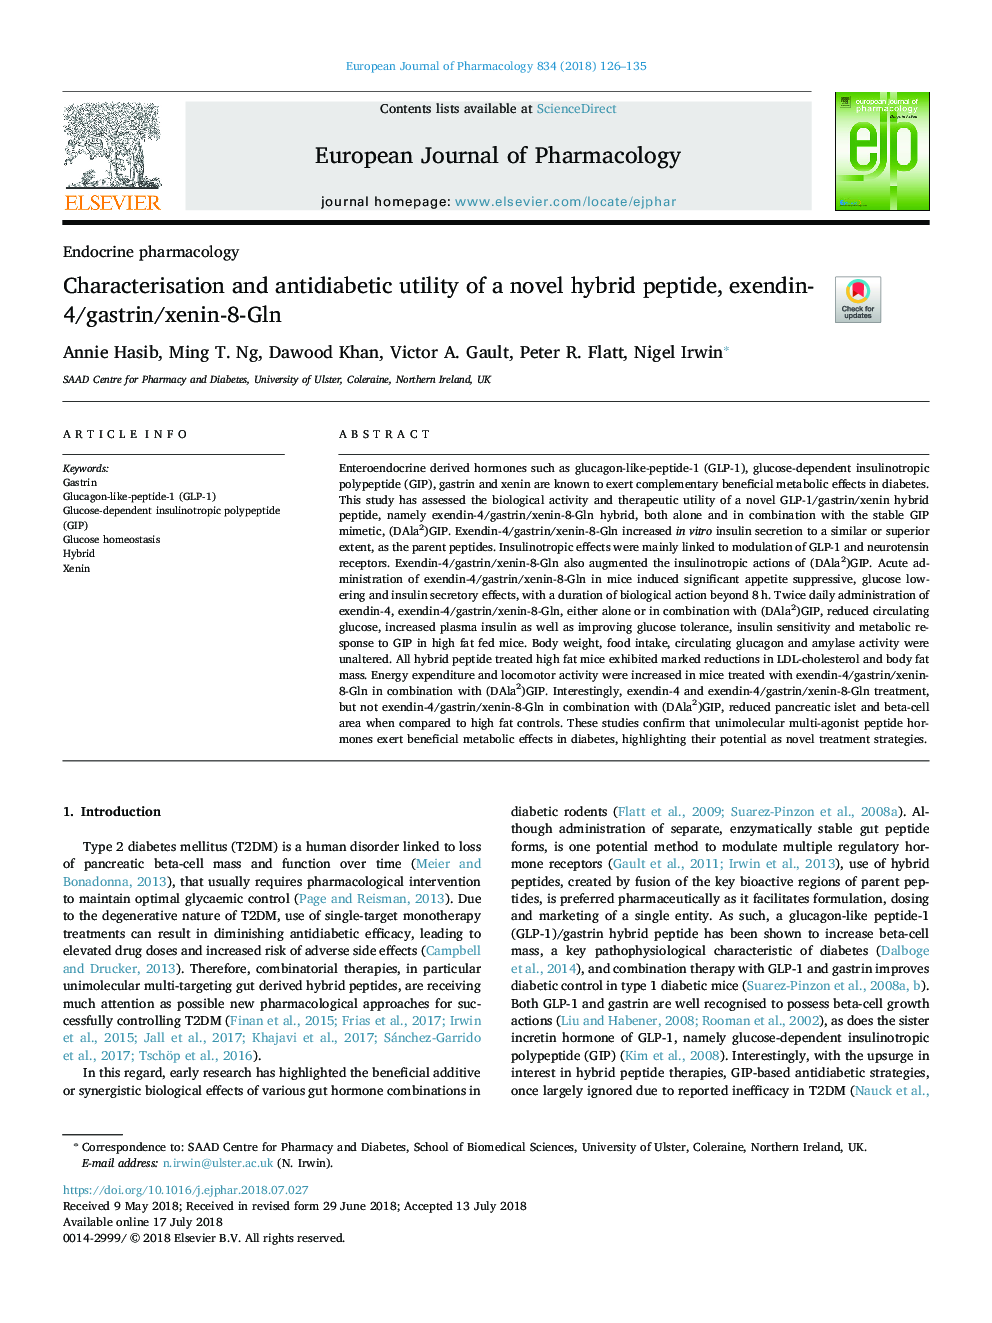 توصیف و کاربرد آنتی دیابتیک یک پپتید هیبرید رمان، اکستانین-4 / گاسترین / جنین -8-گلن 